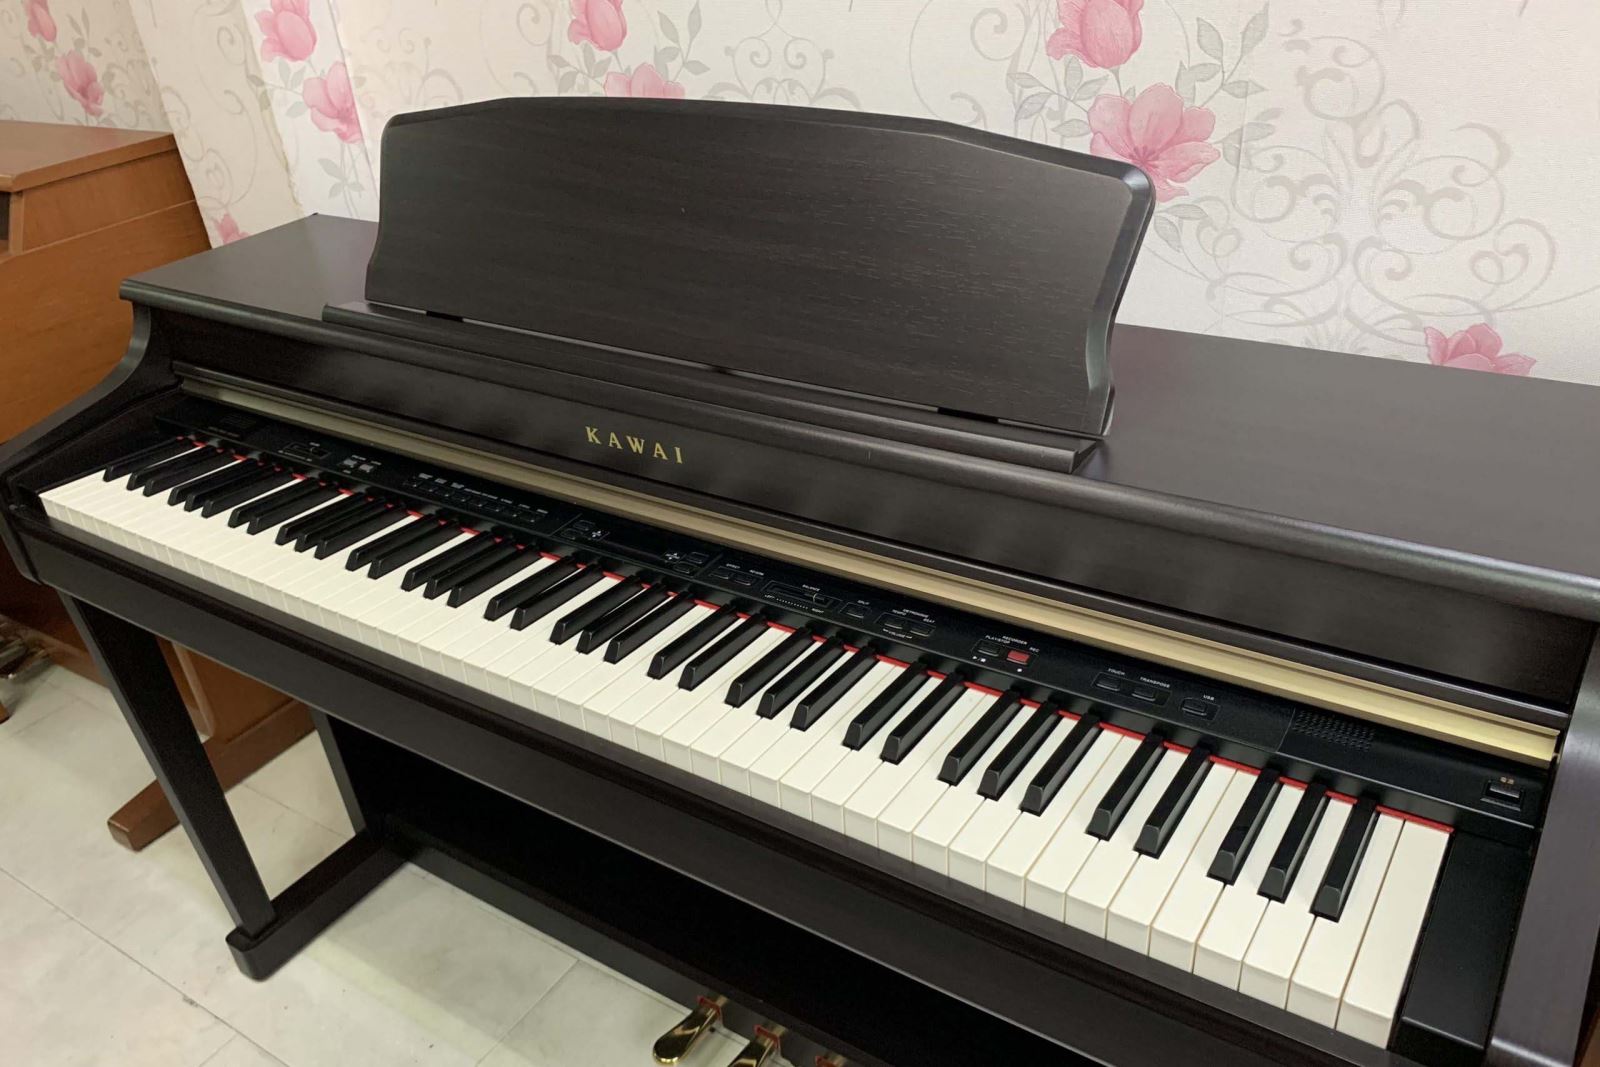 đàn piano điện kawai cn340